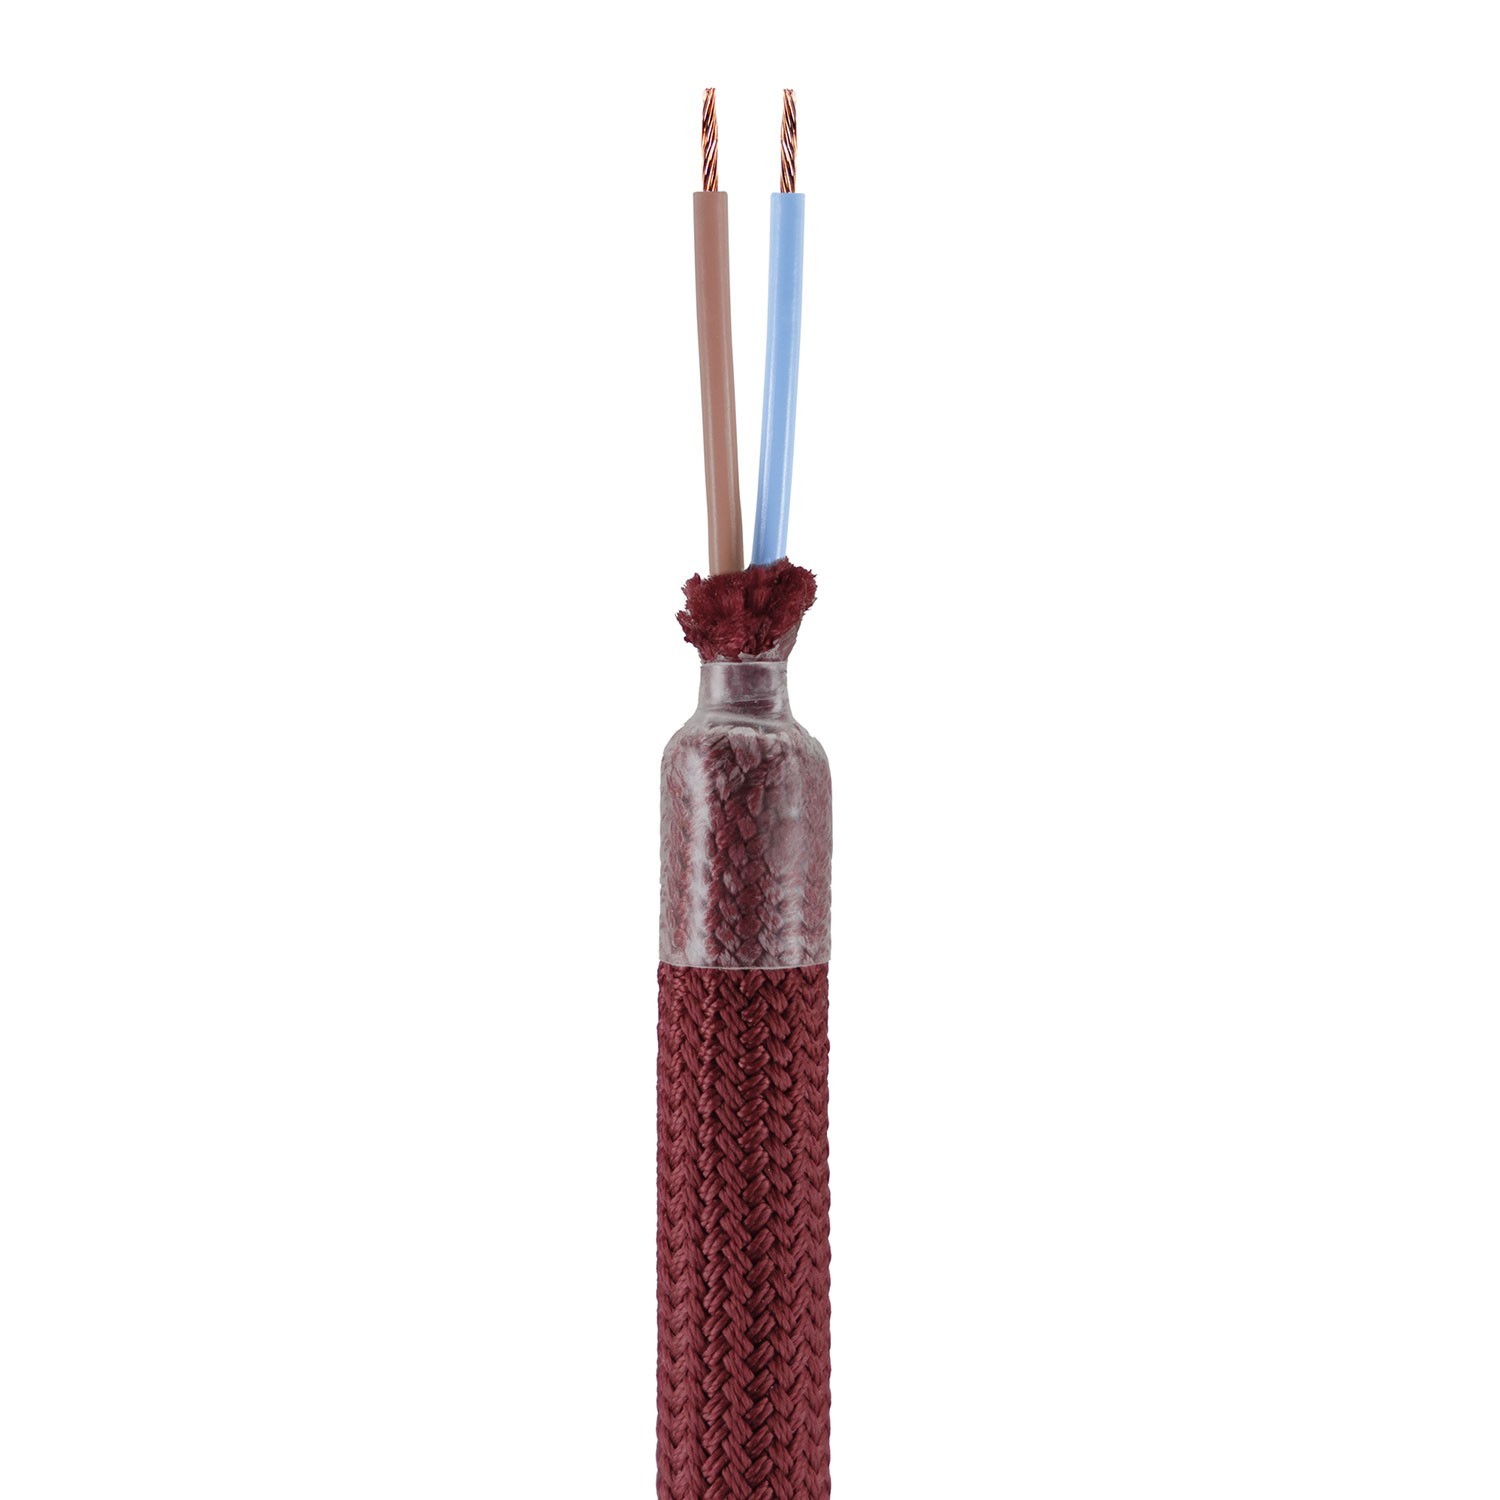 Creative Flex készlet rugalmas csővel, Burgundi RM19 szövet borítással, fém csatlakozókkal